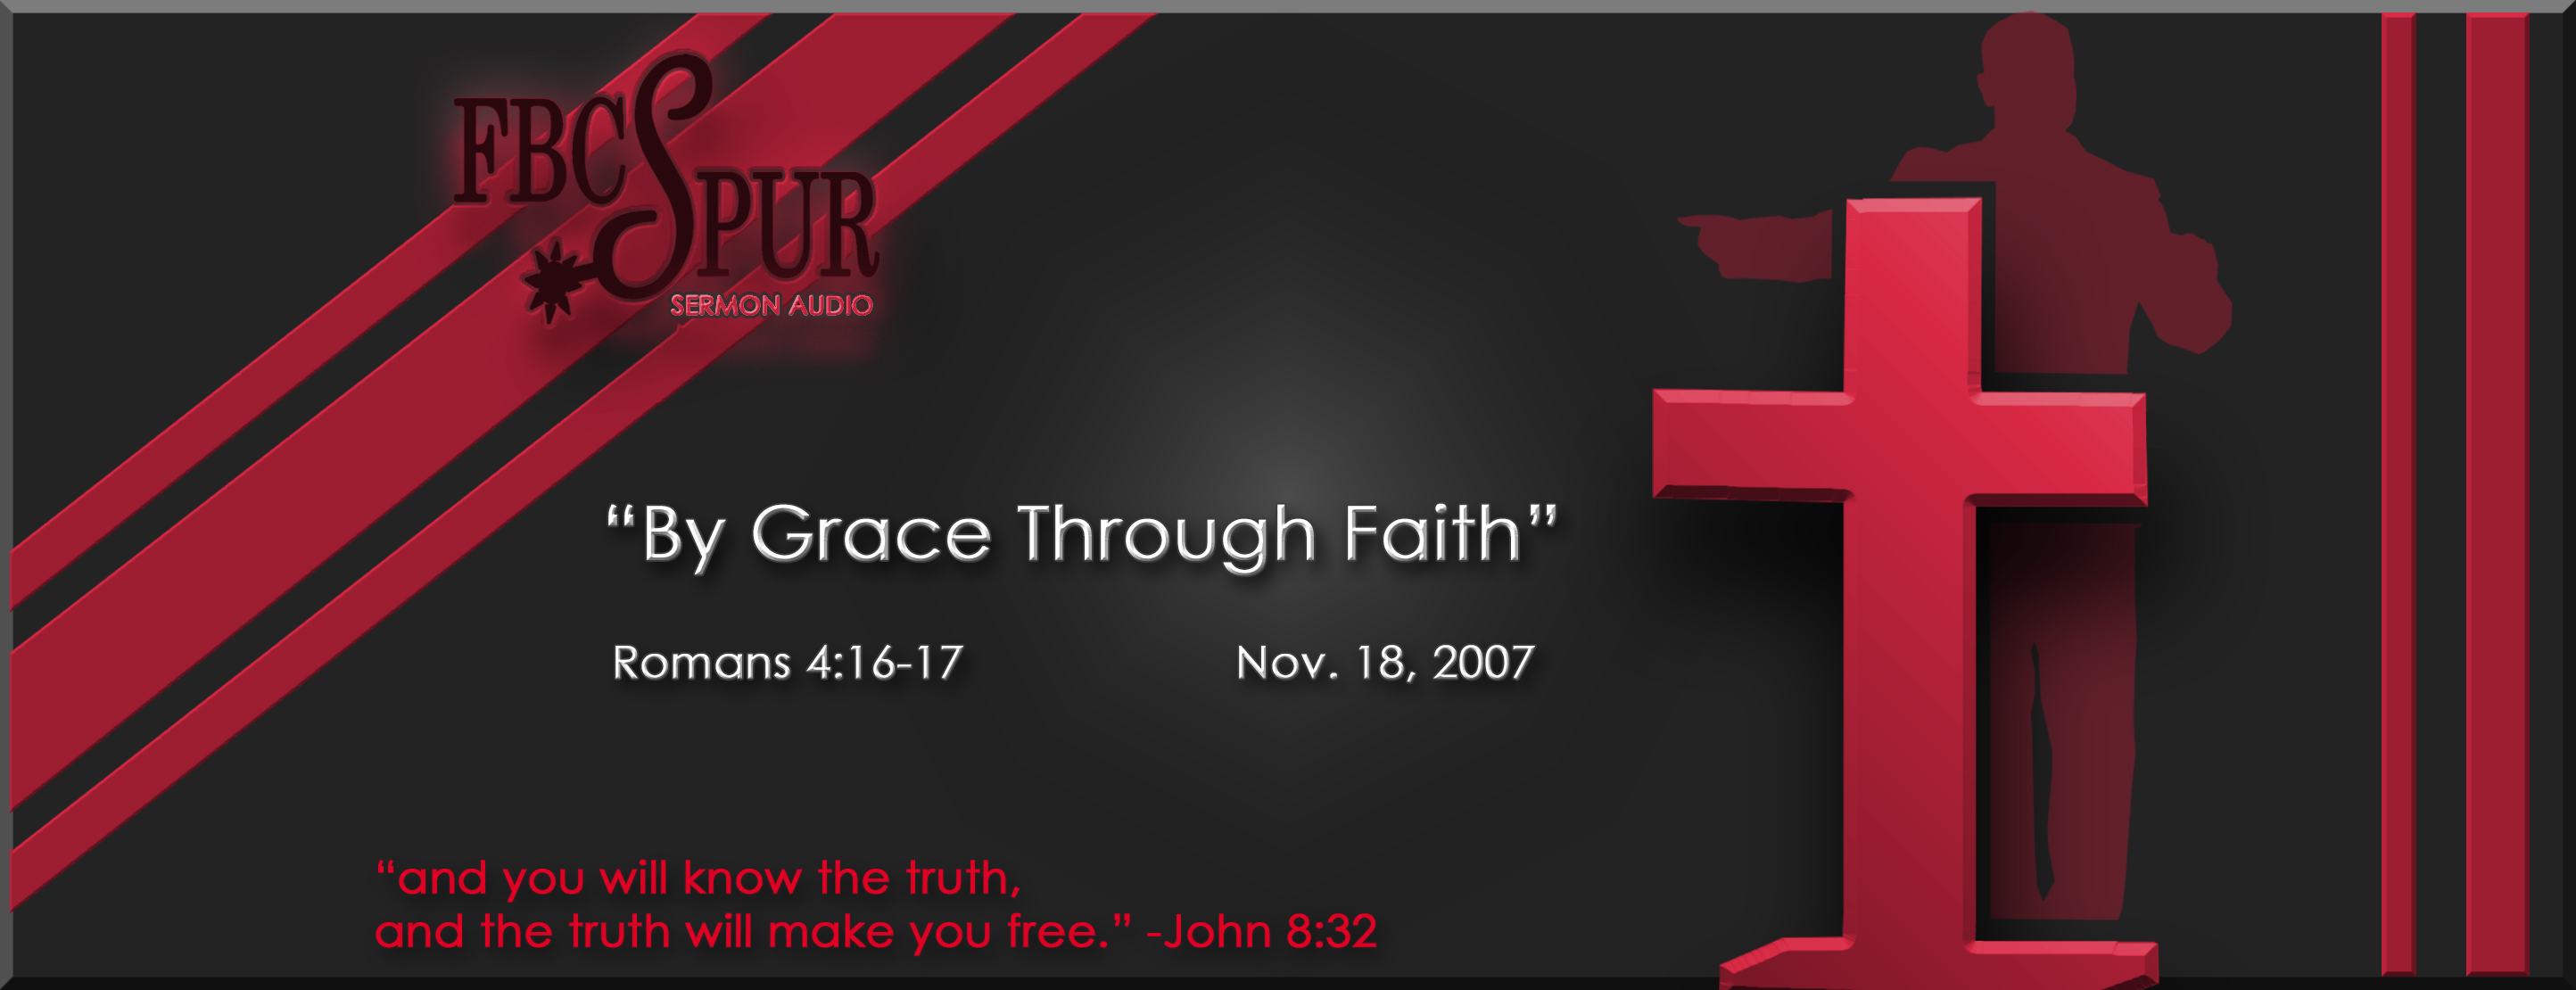 by-grace-through-faith-romans-4-16-17-fbc-spur